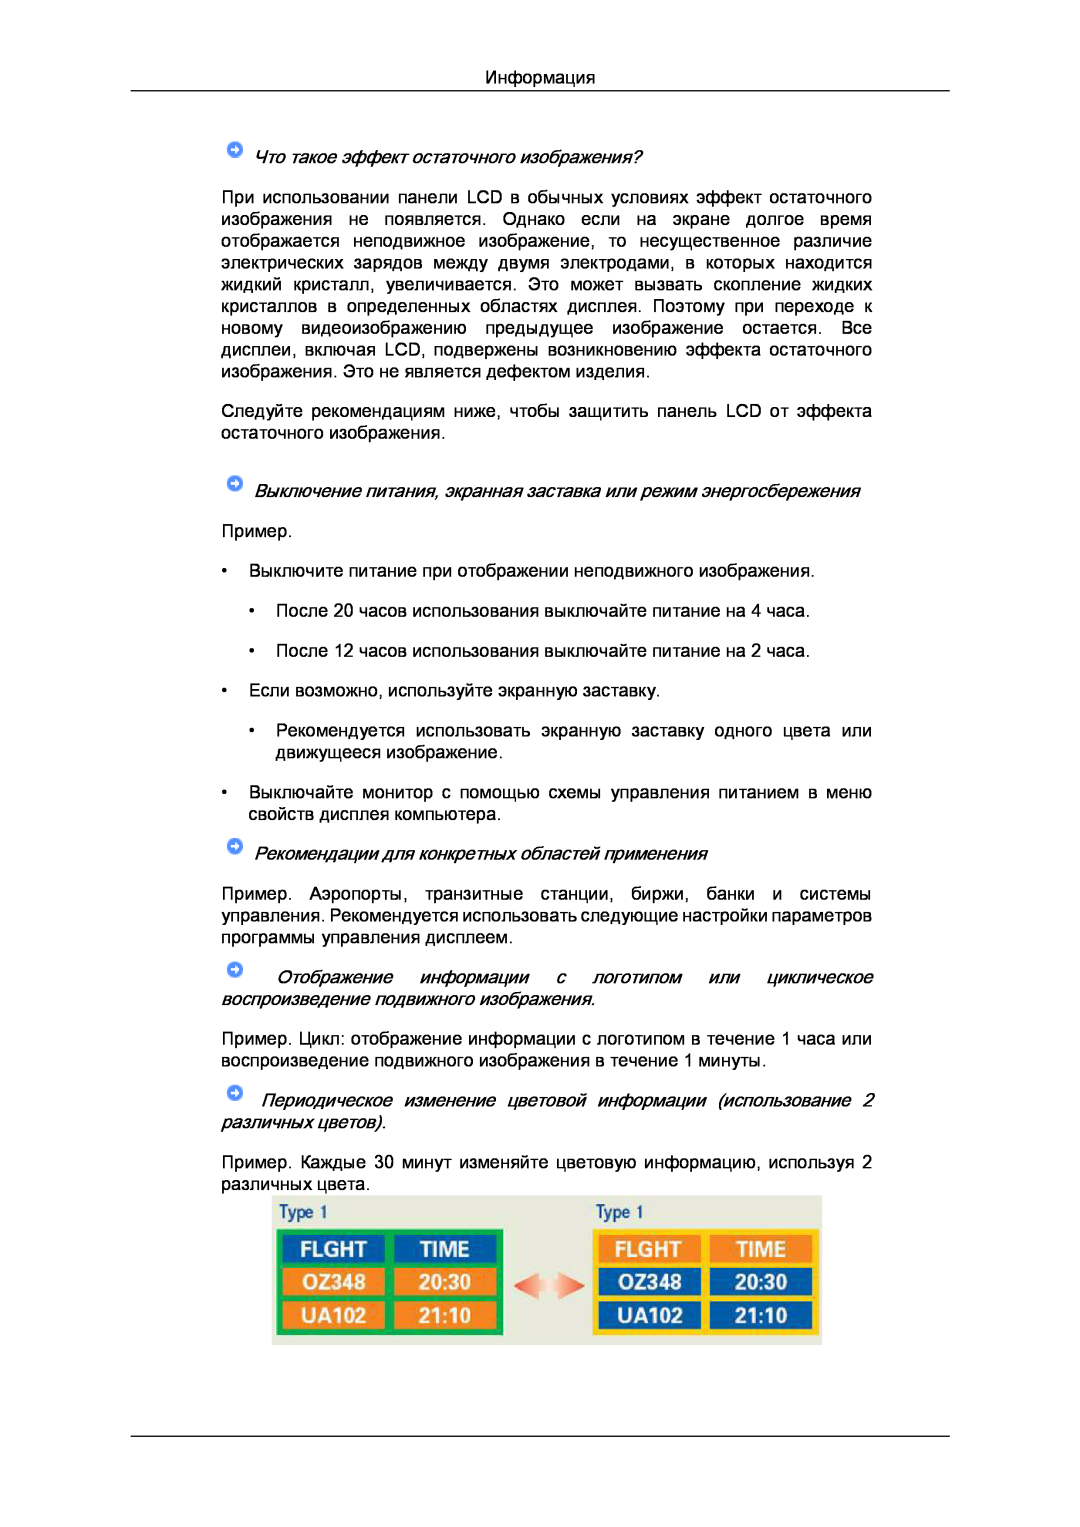 Samsung LS22LFUGF/EN manual Что такое эффект остаточного изображения?, Рекомендации для конкретных областей применения 